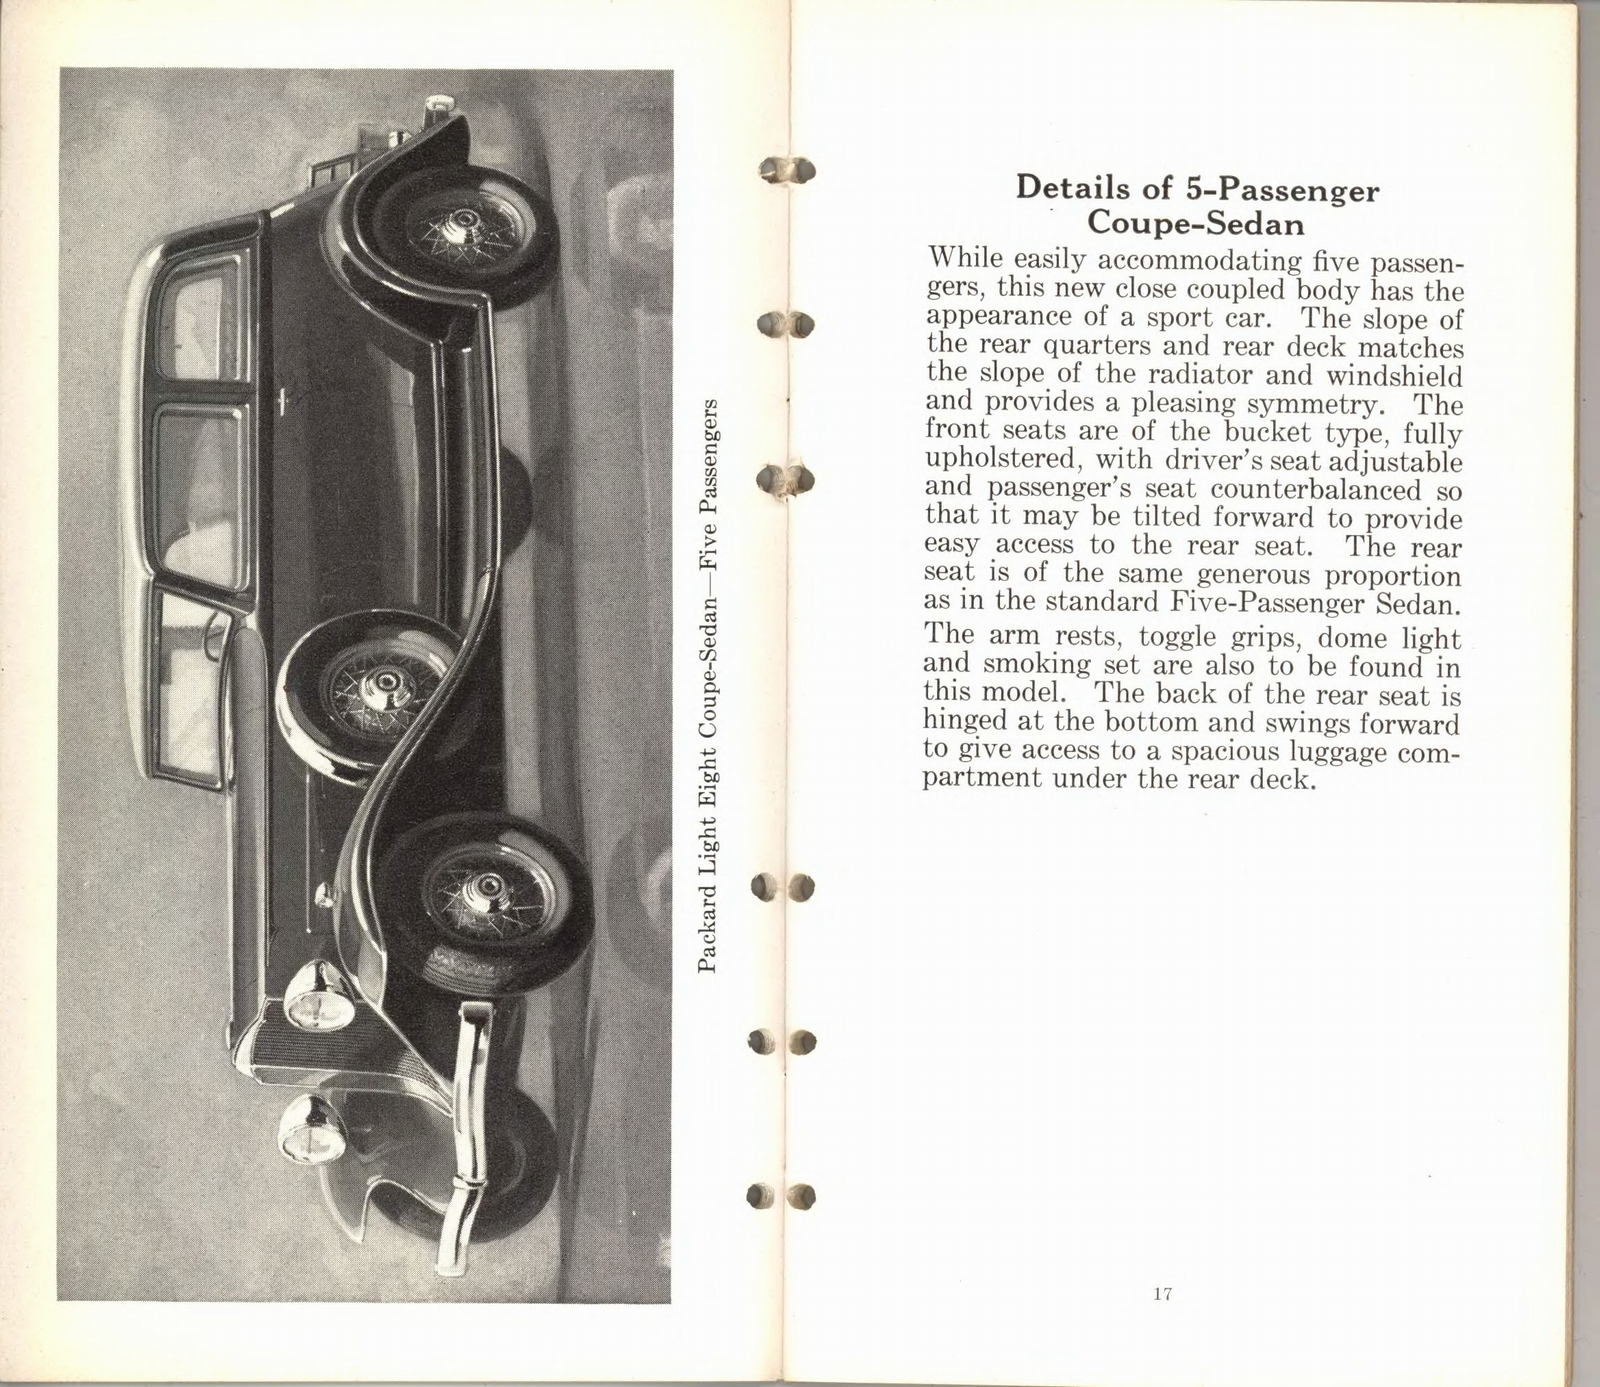 n_1932 Packard Light Eight Facts Book-16-17.jpg